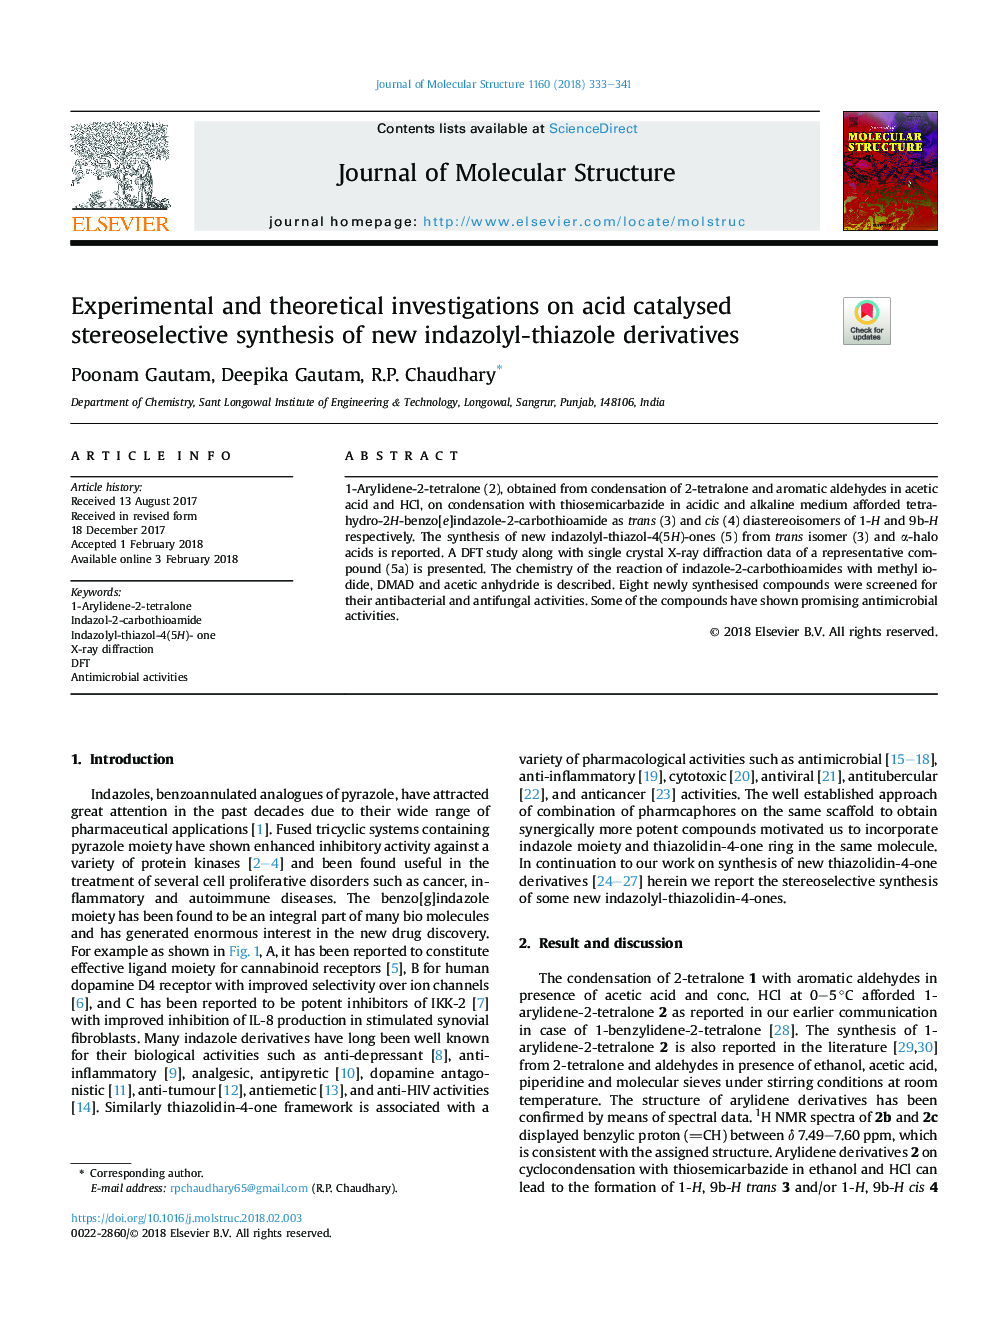 تحقیقات تجربی و نظری در مورد سنتز استریلیزای کاتالیزوری اسیدی از مشتقات ایندازولیل تیازول جدید 